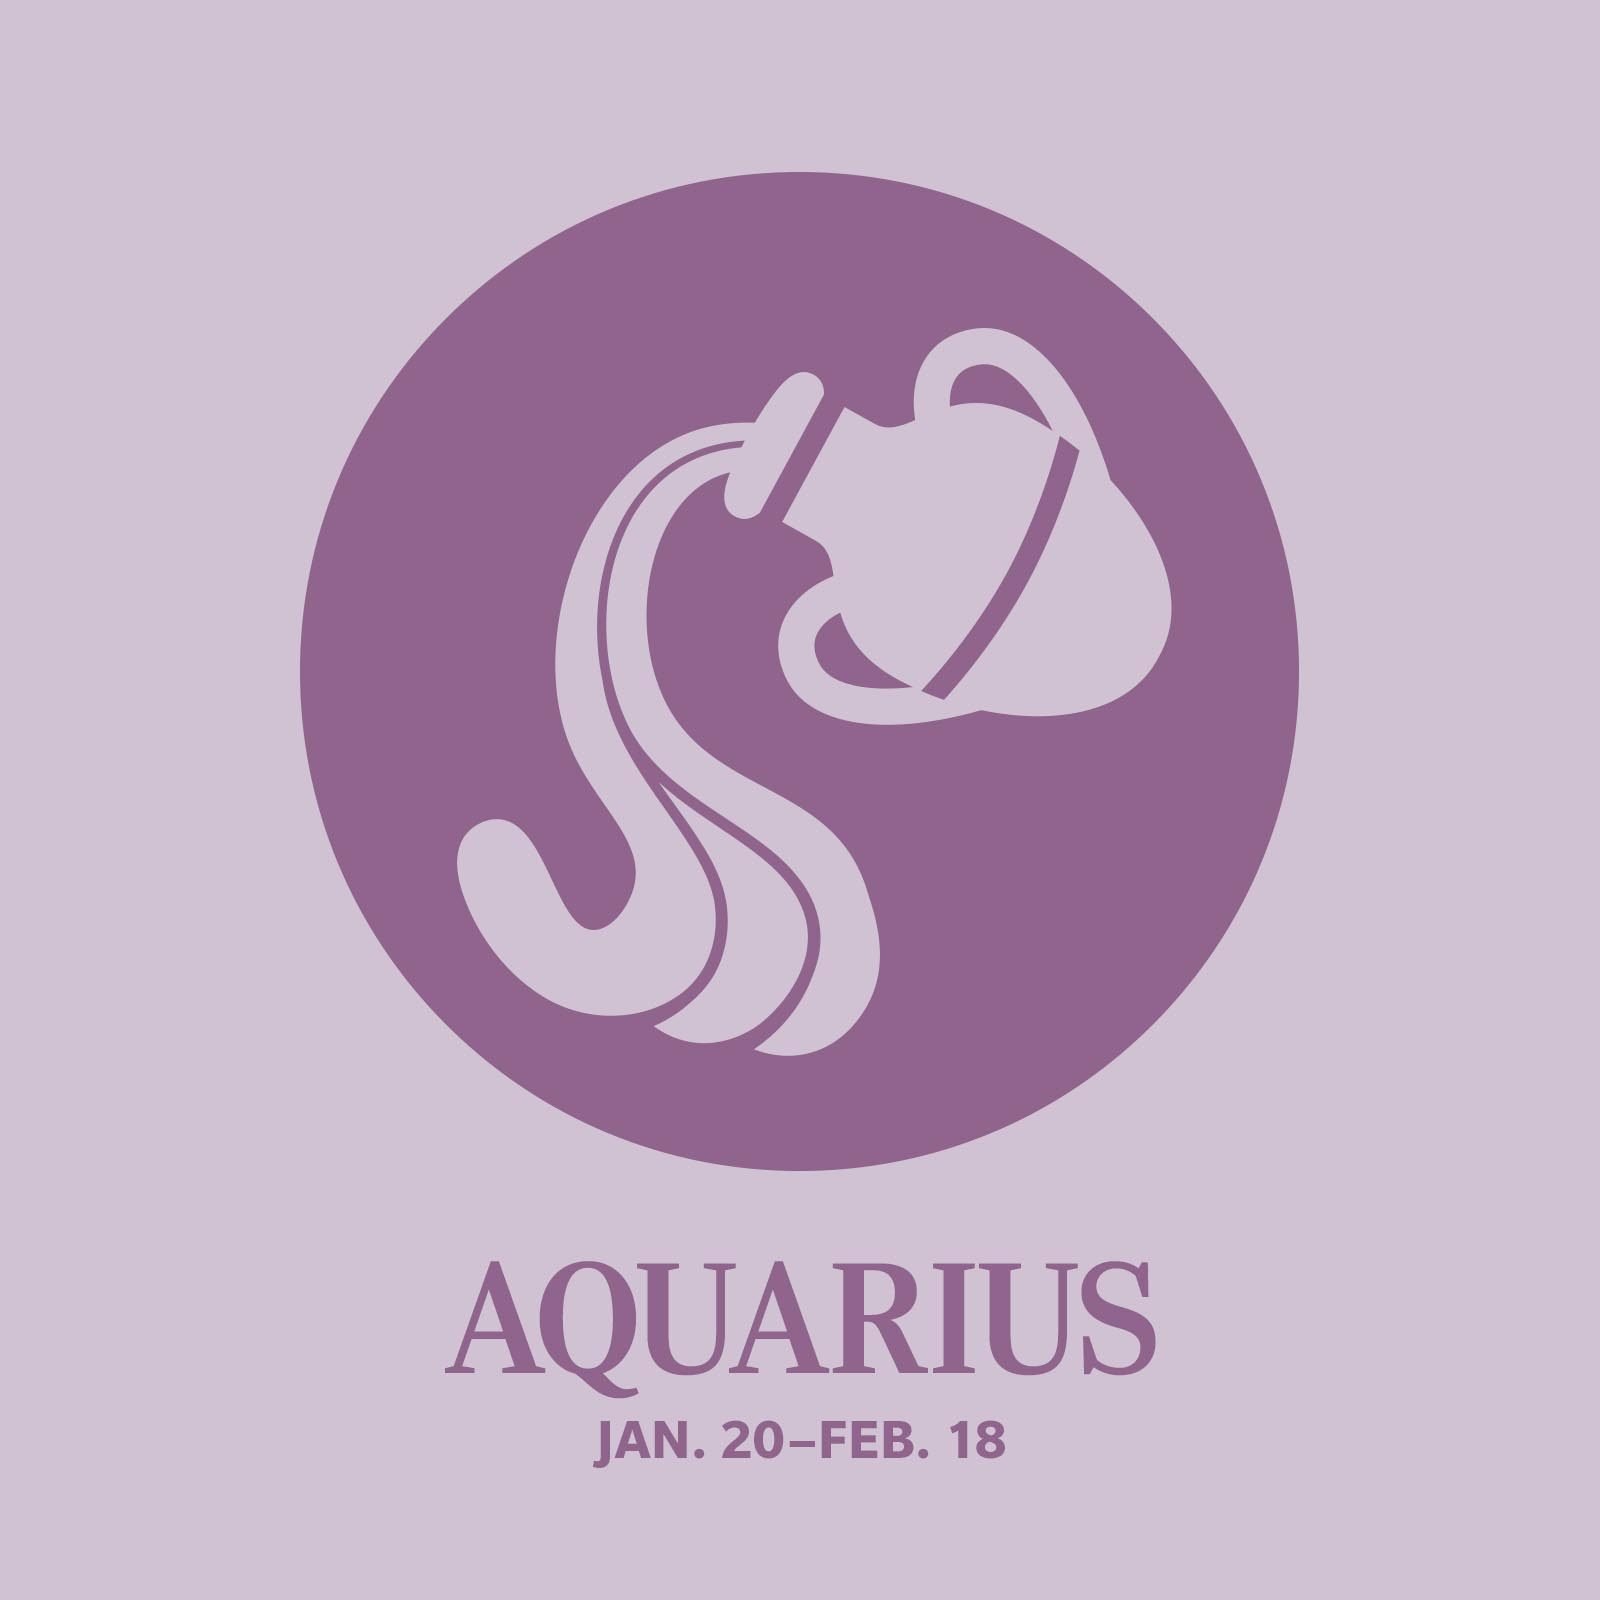 Rarest Zodiac Sign Aquarius